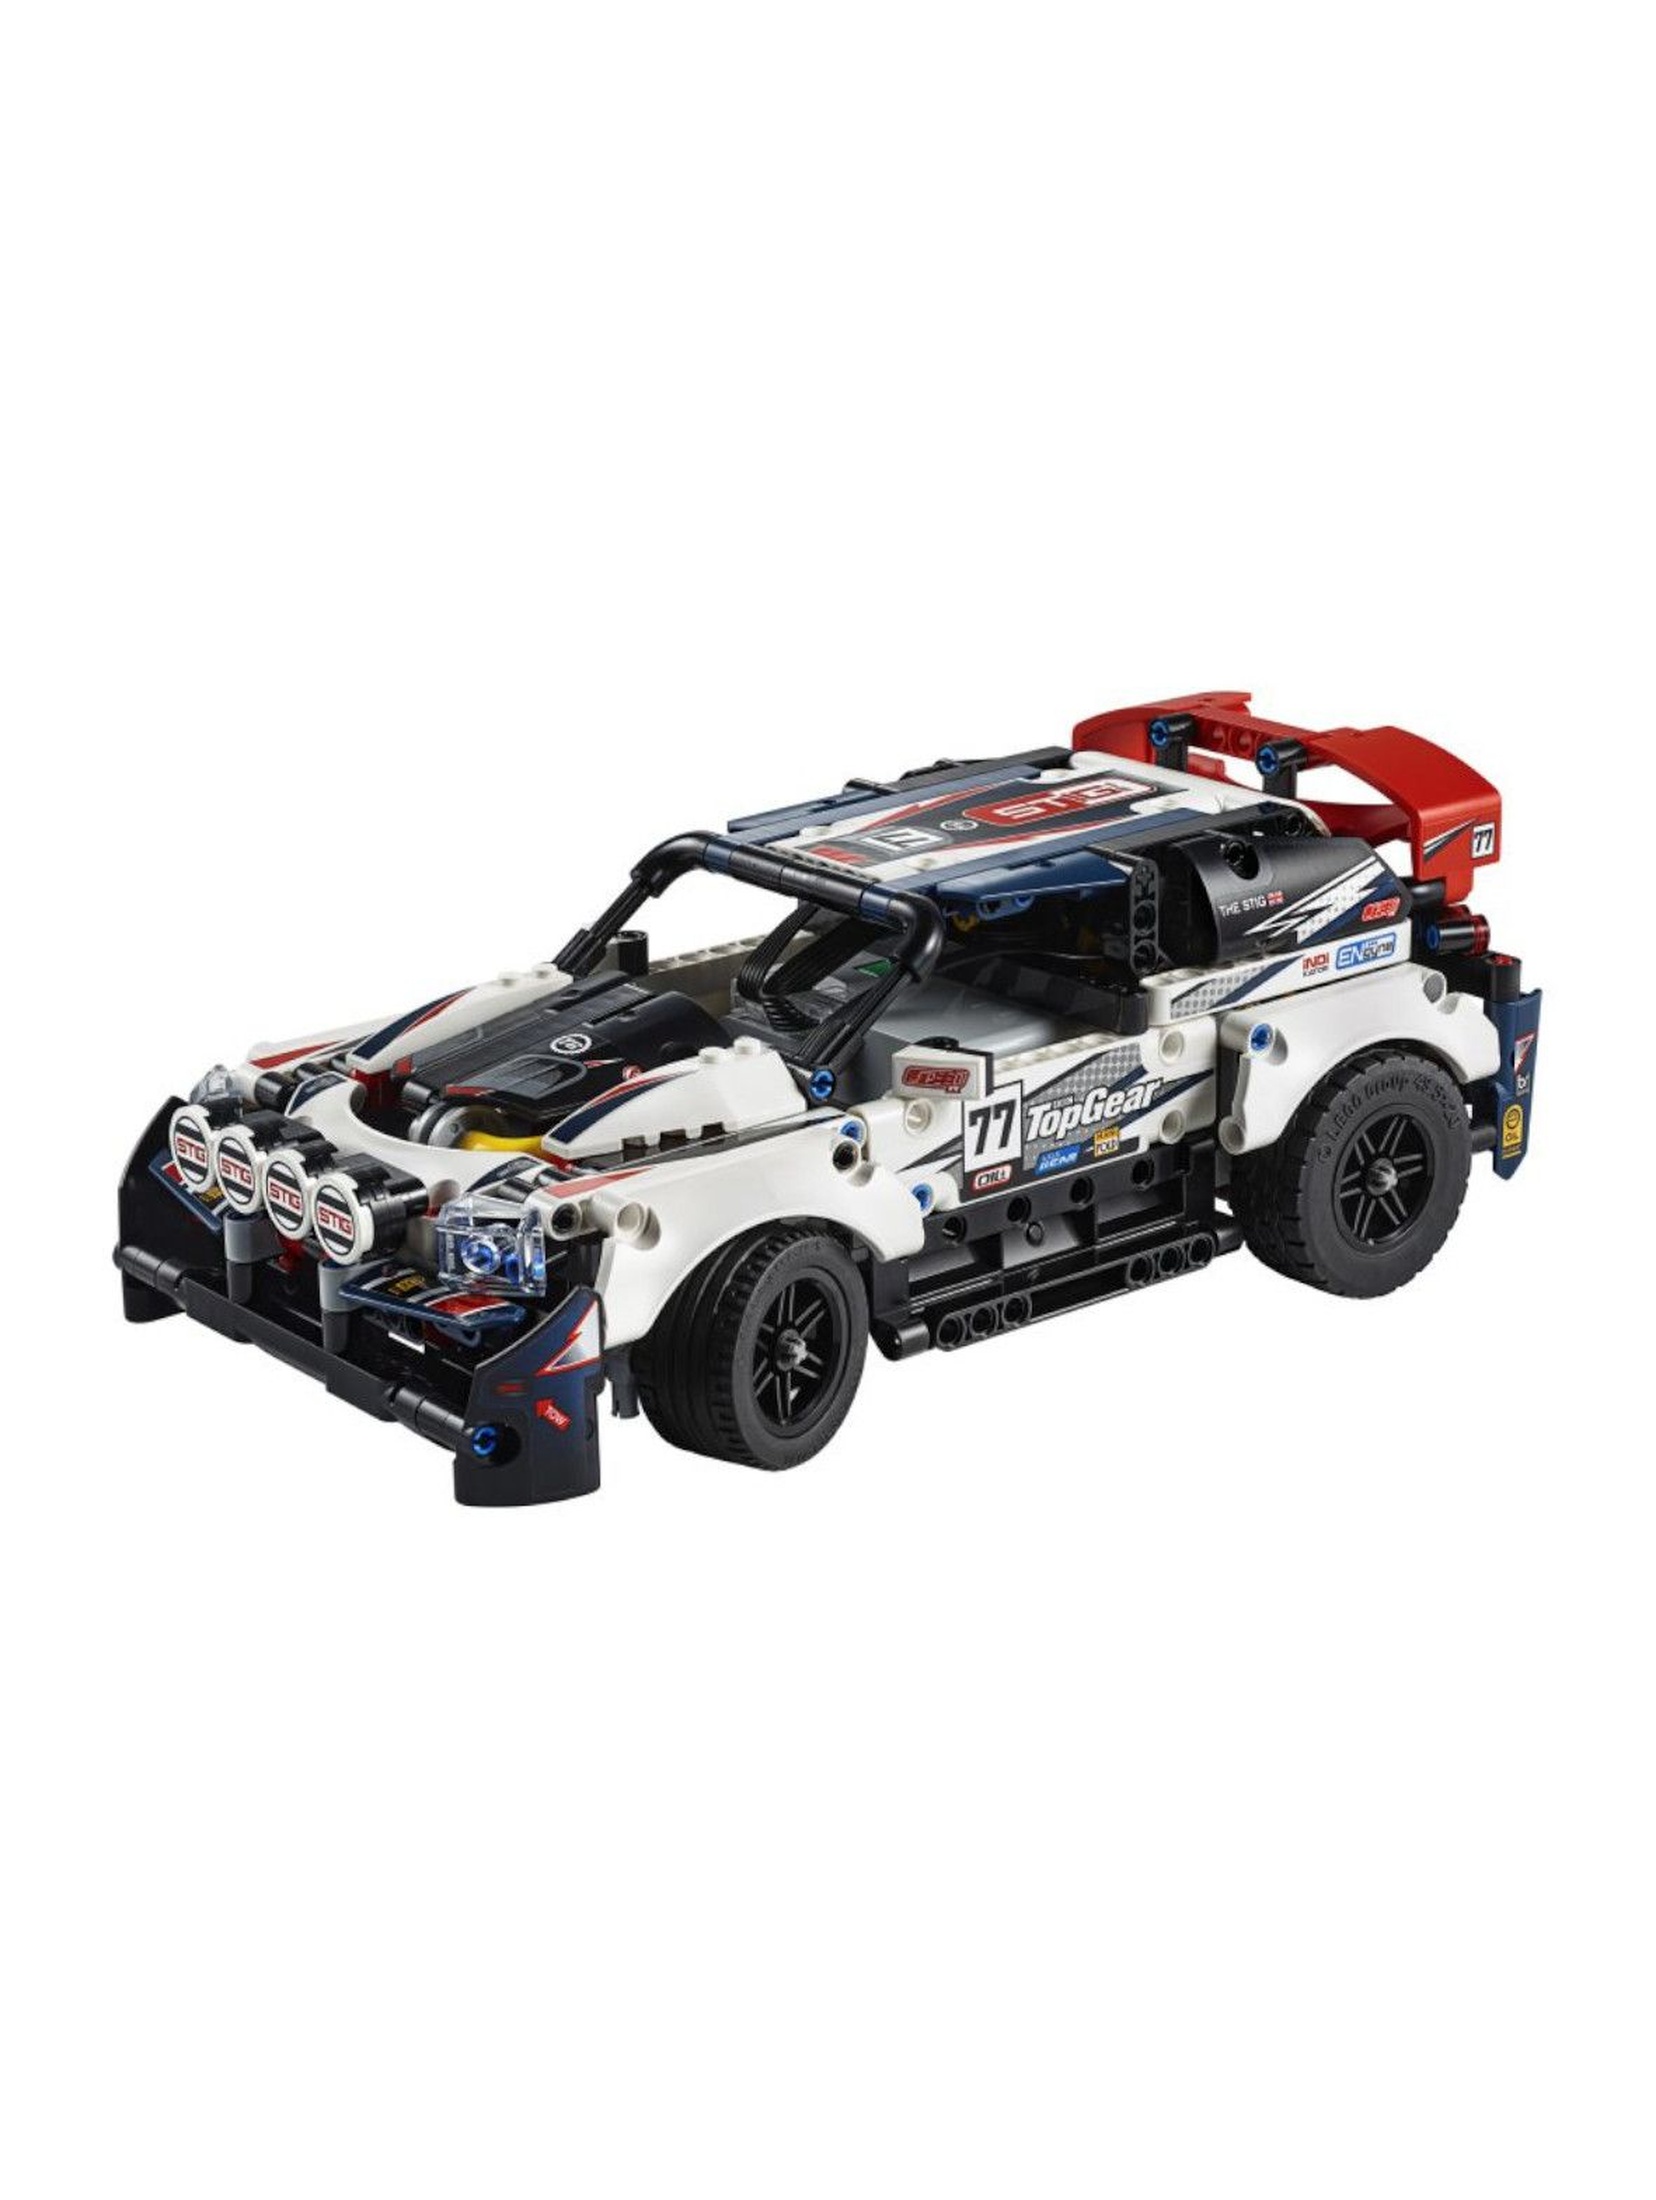 LEGO Technic - Auto wyścigowe Top Gear sterowane przez aplikację - 463 elementów, wiek 9+